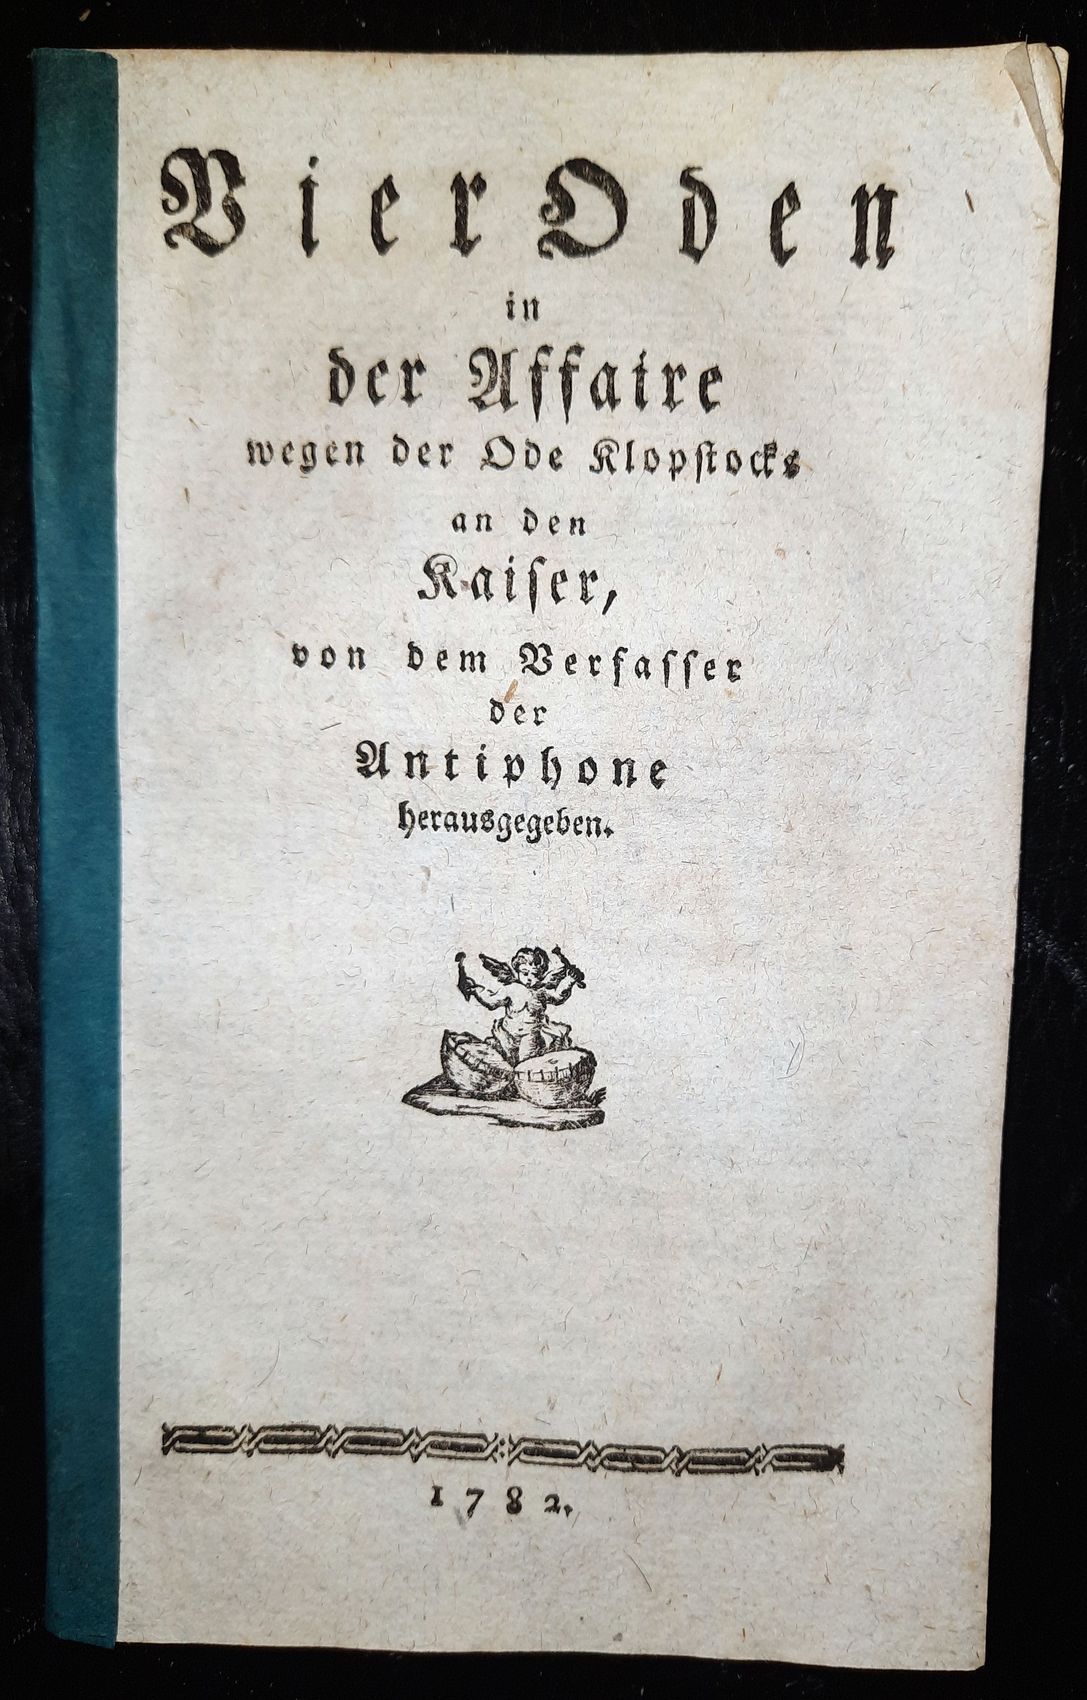  - Vier Oden in der Affaire wegen der Ode Klopstocks an den Kaiser, von dem Verfasser der Antiphone herausgegeben..